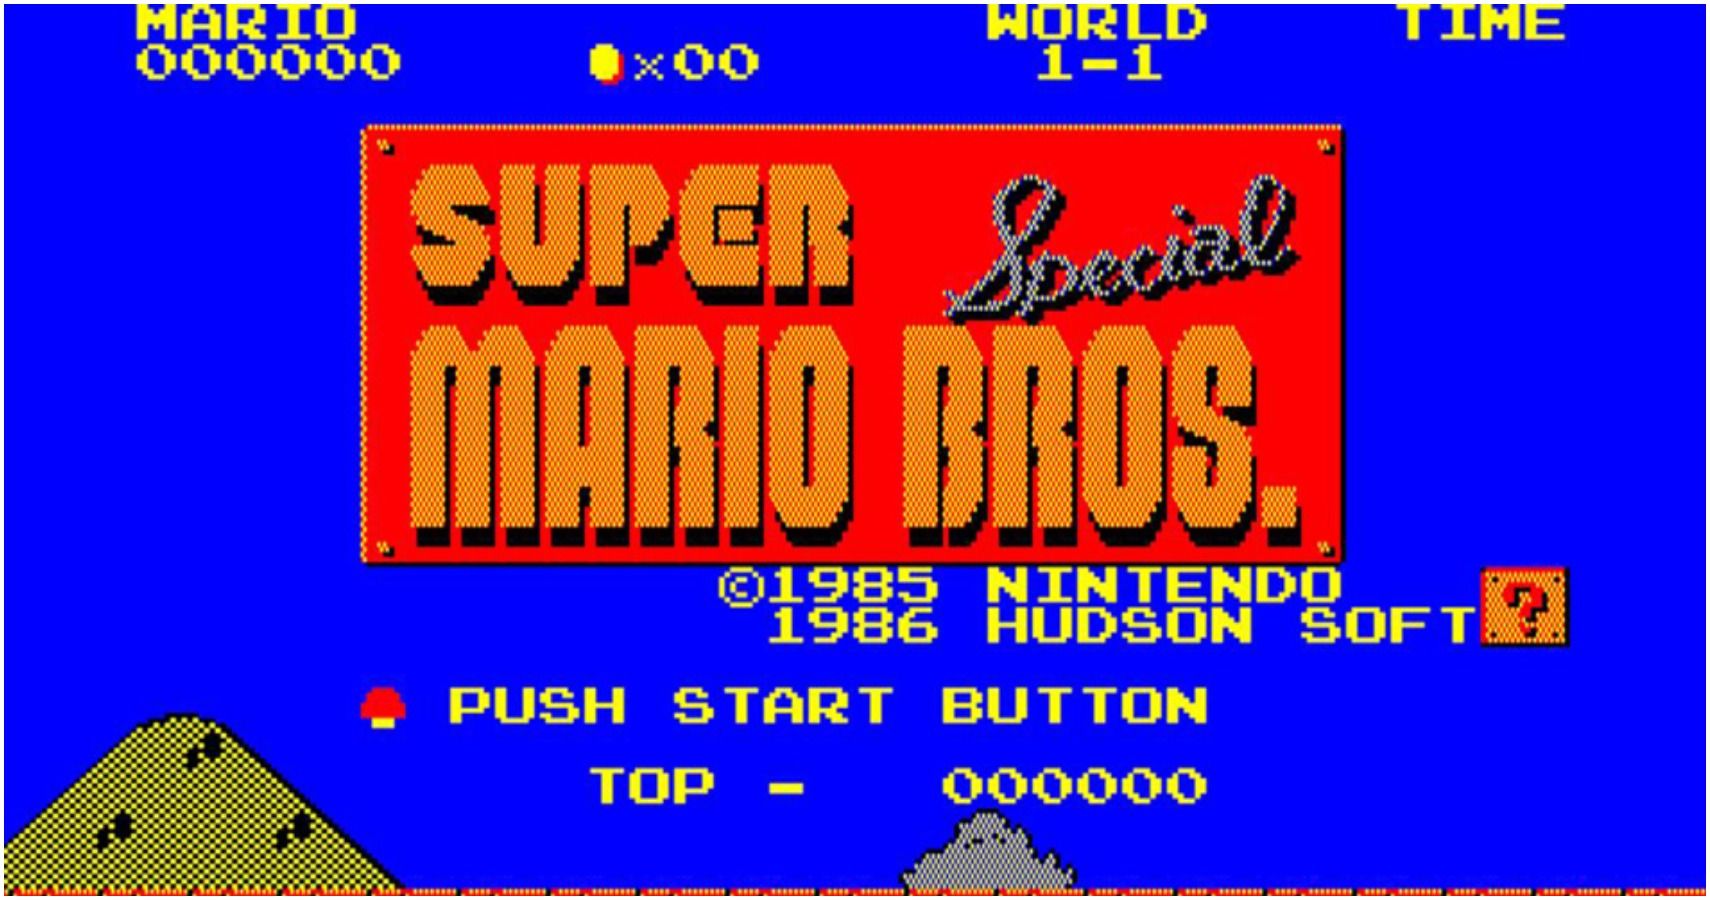 Mario bros special. Nintendo 1986. Nintendo 1985.